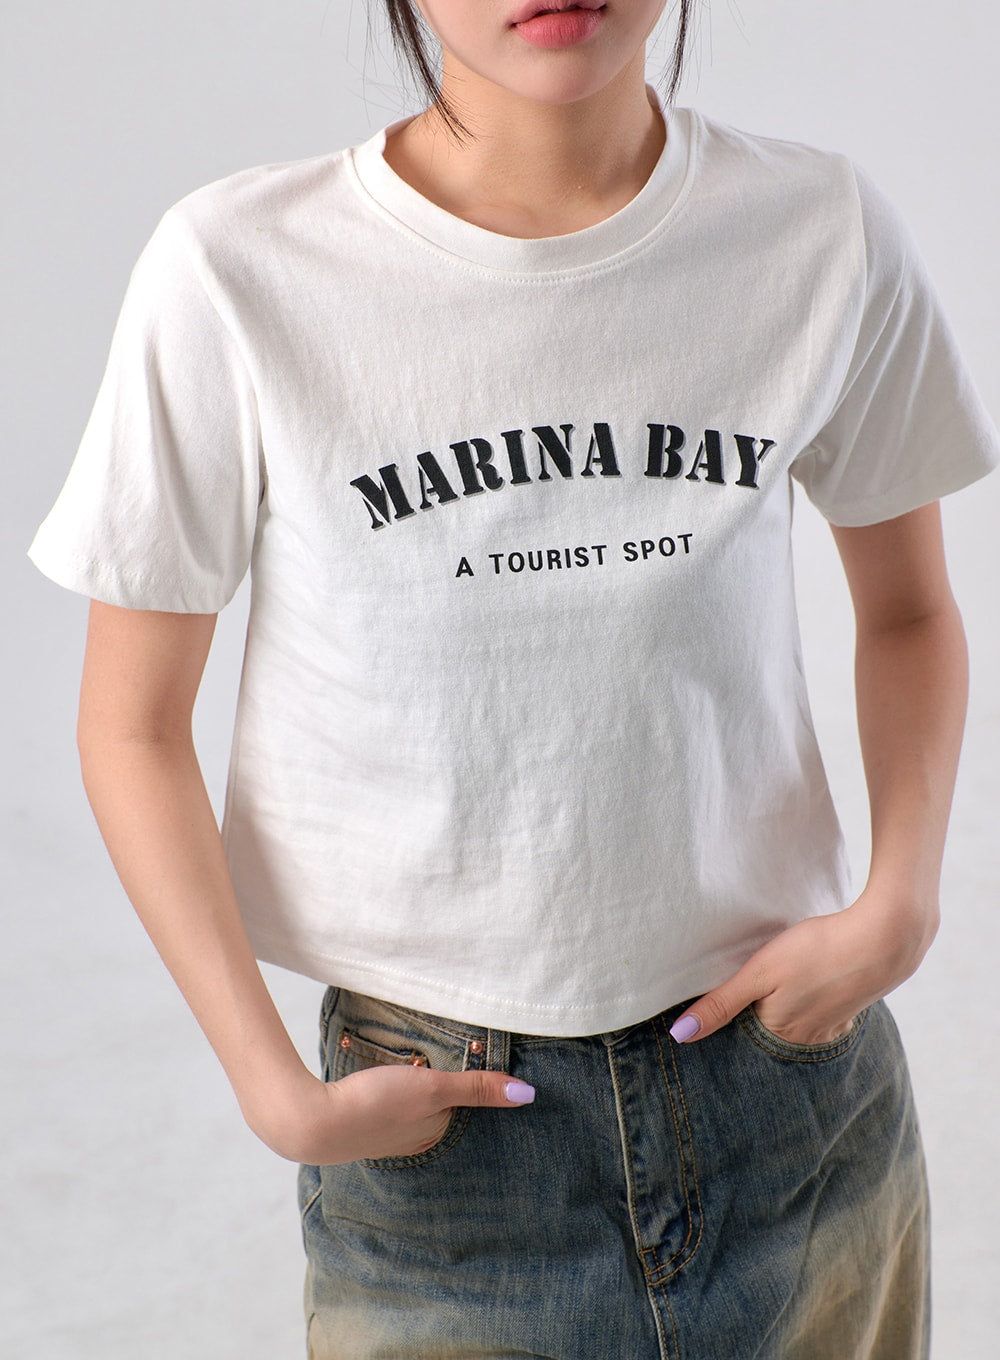 Marina Bay Tee IM329